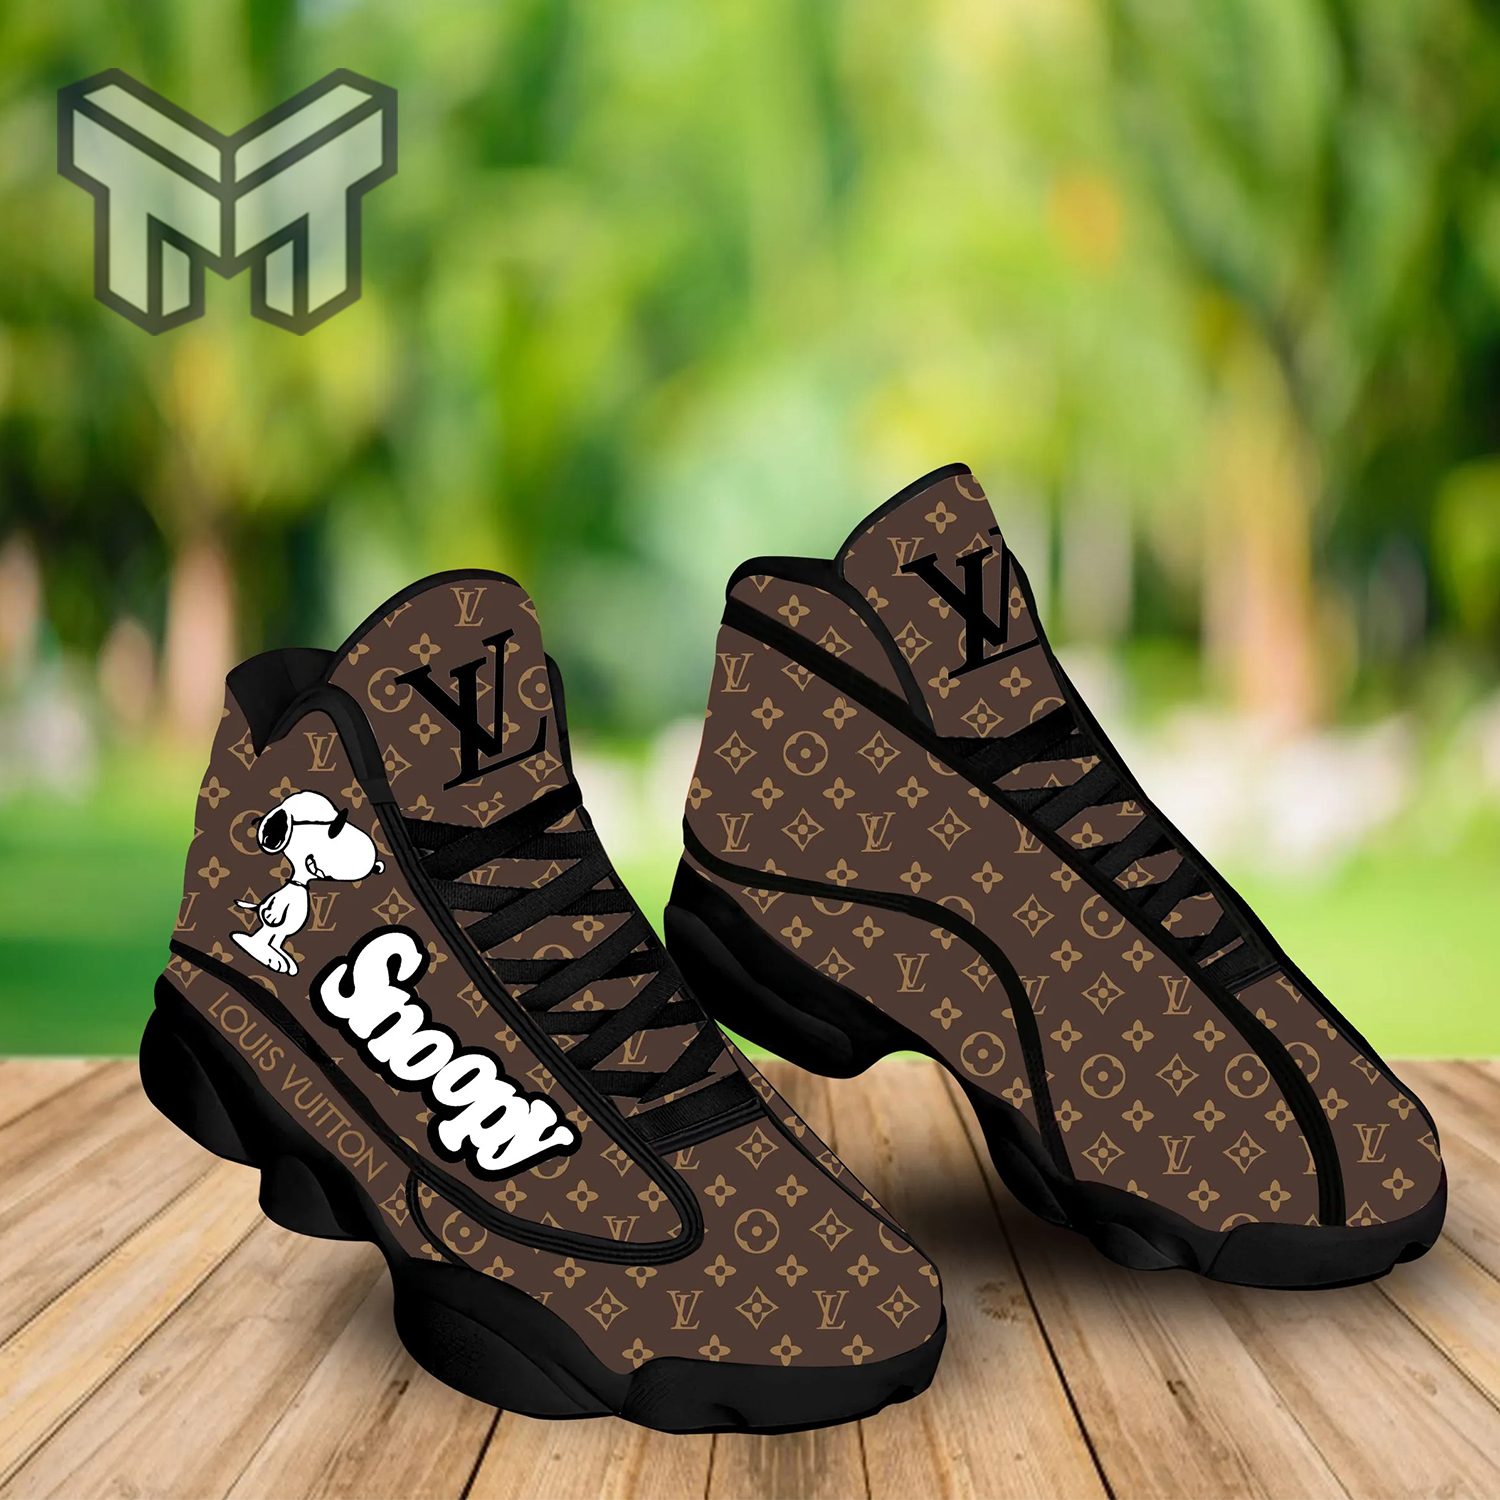 Louis Vuitton Black Brown Air Jordan 11 Sneakers Shoes Hot Lv